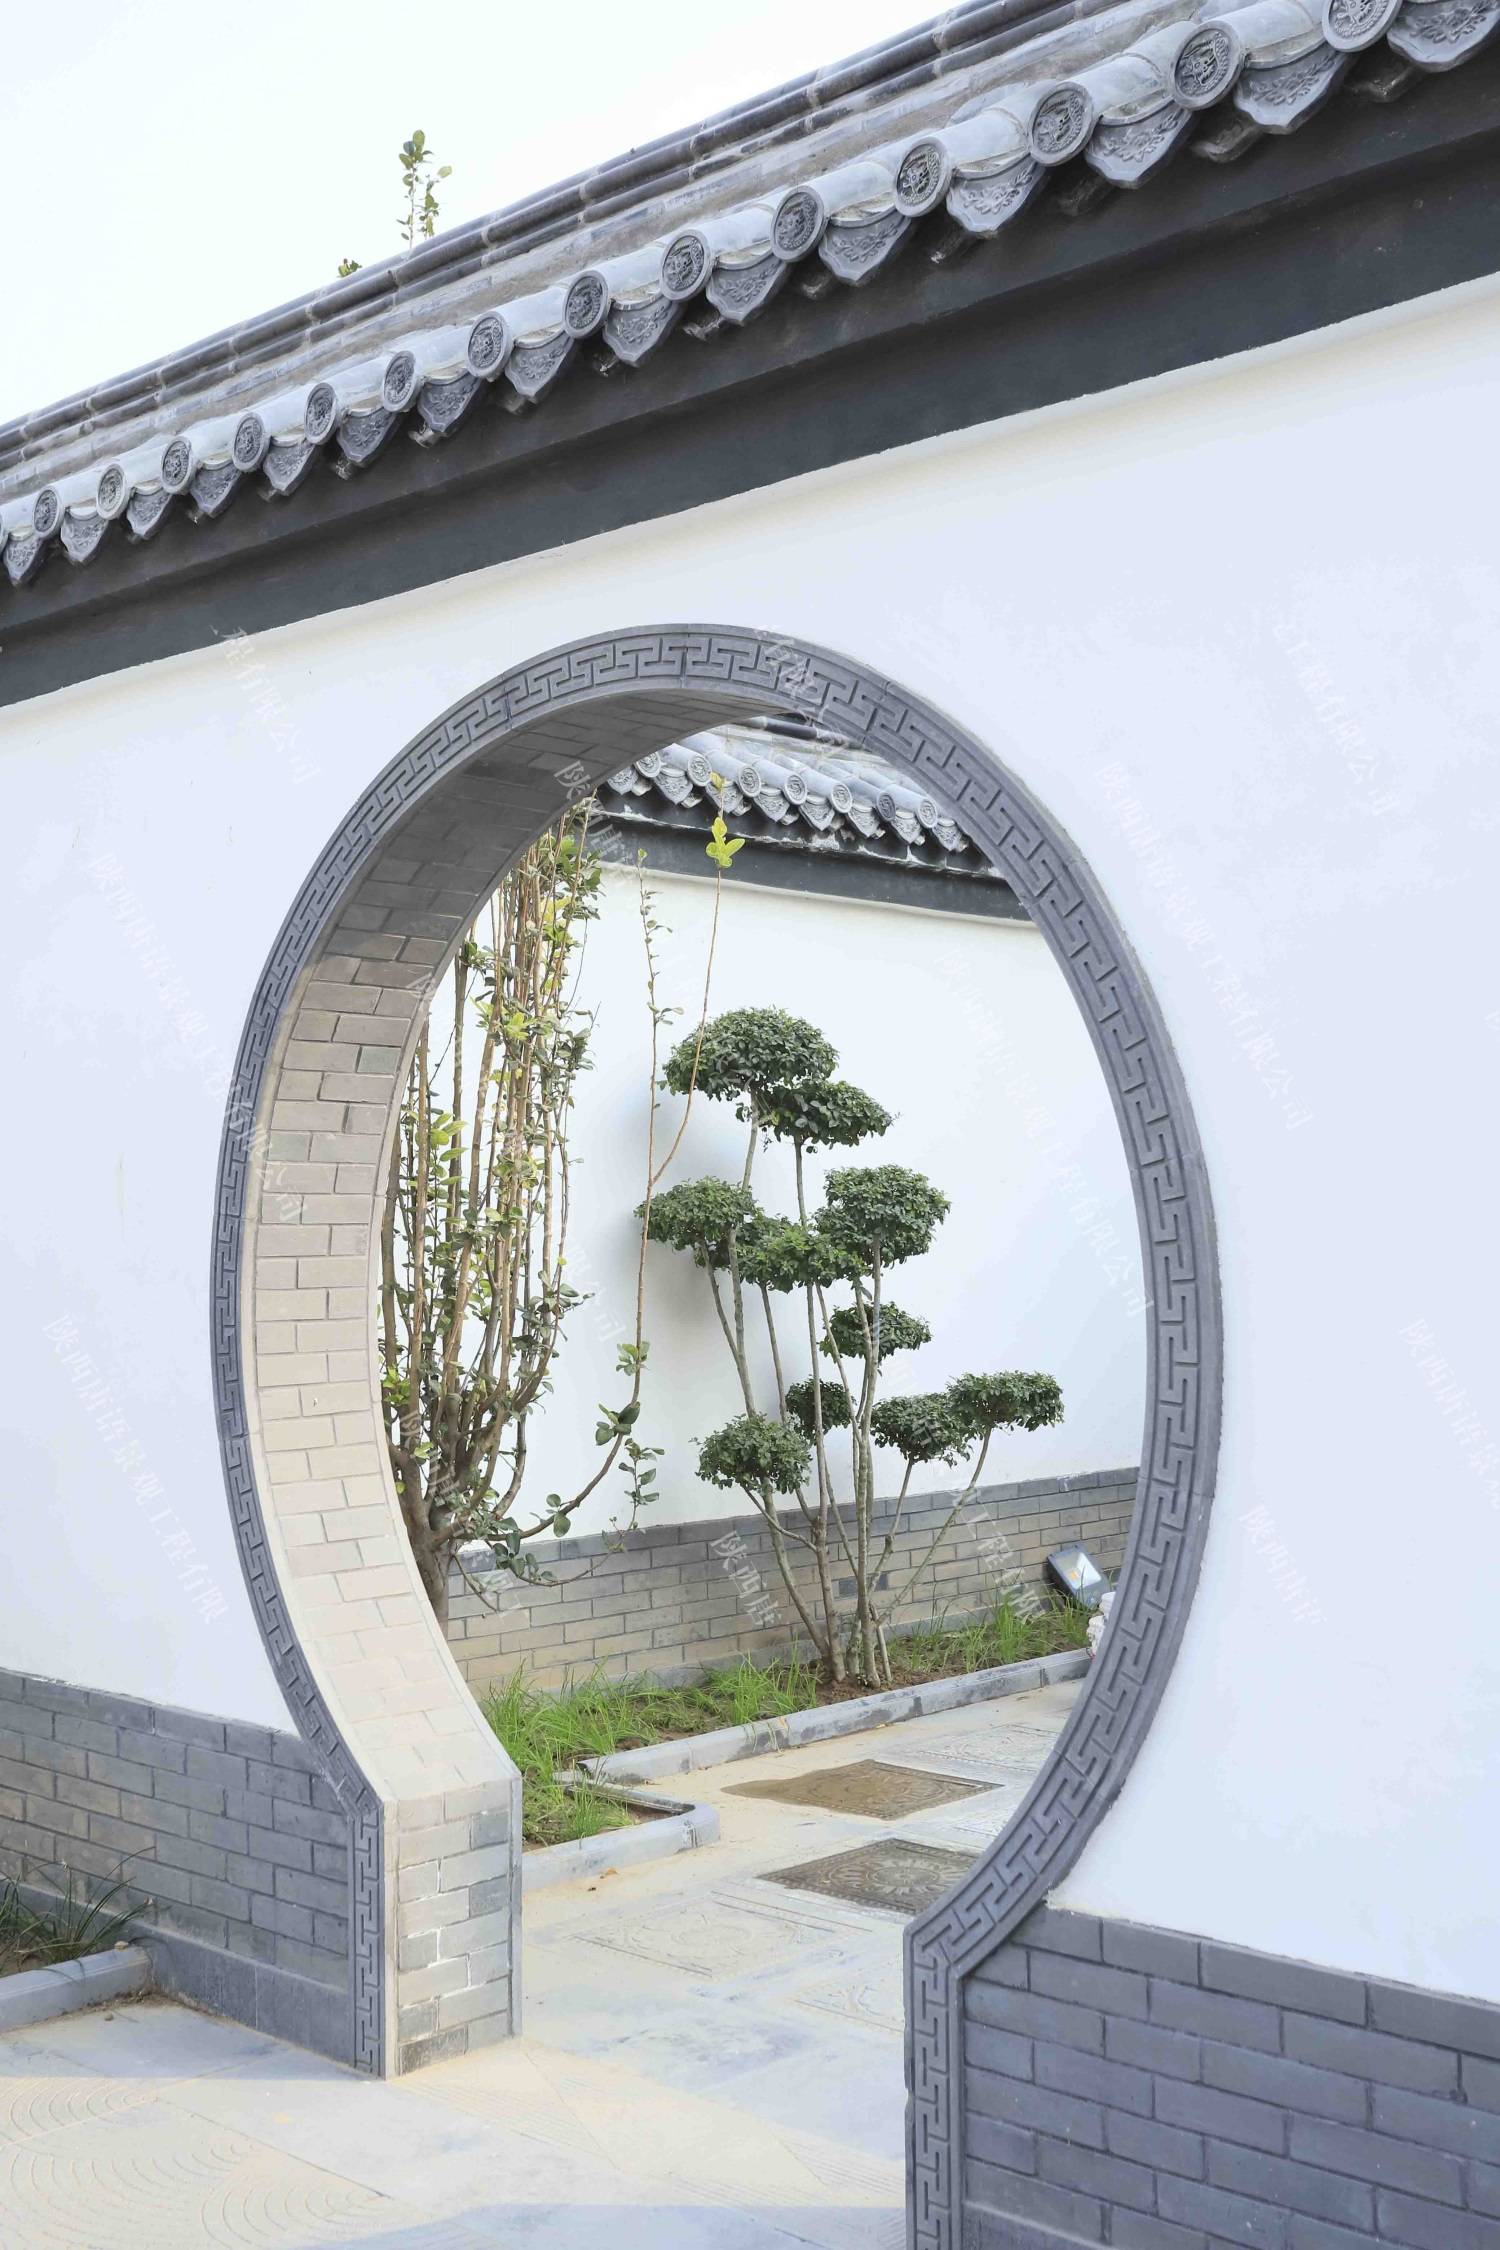 中式青砖小院 建房图片